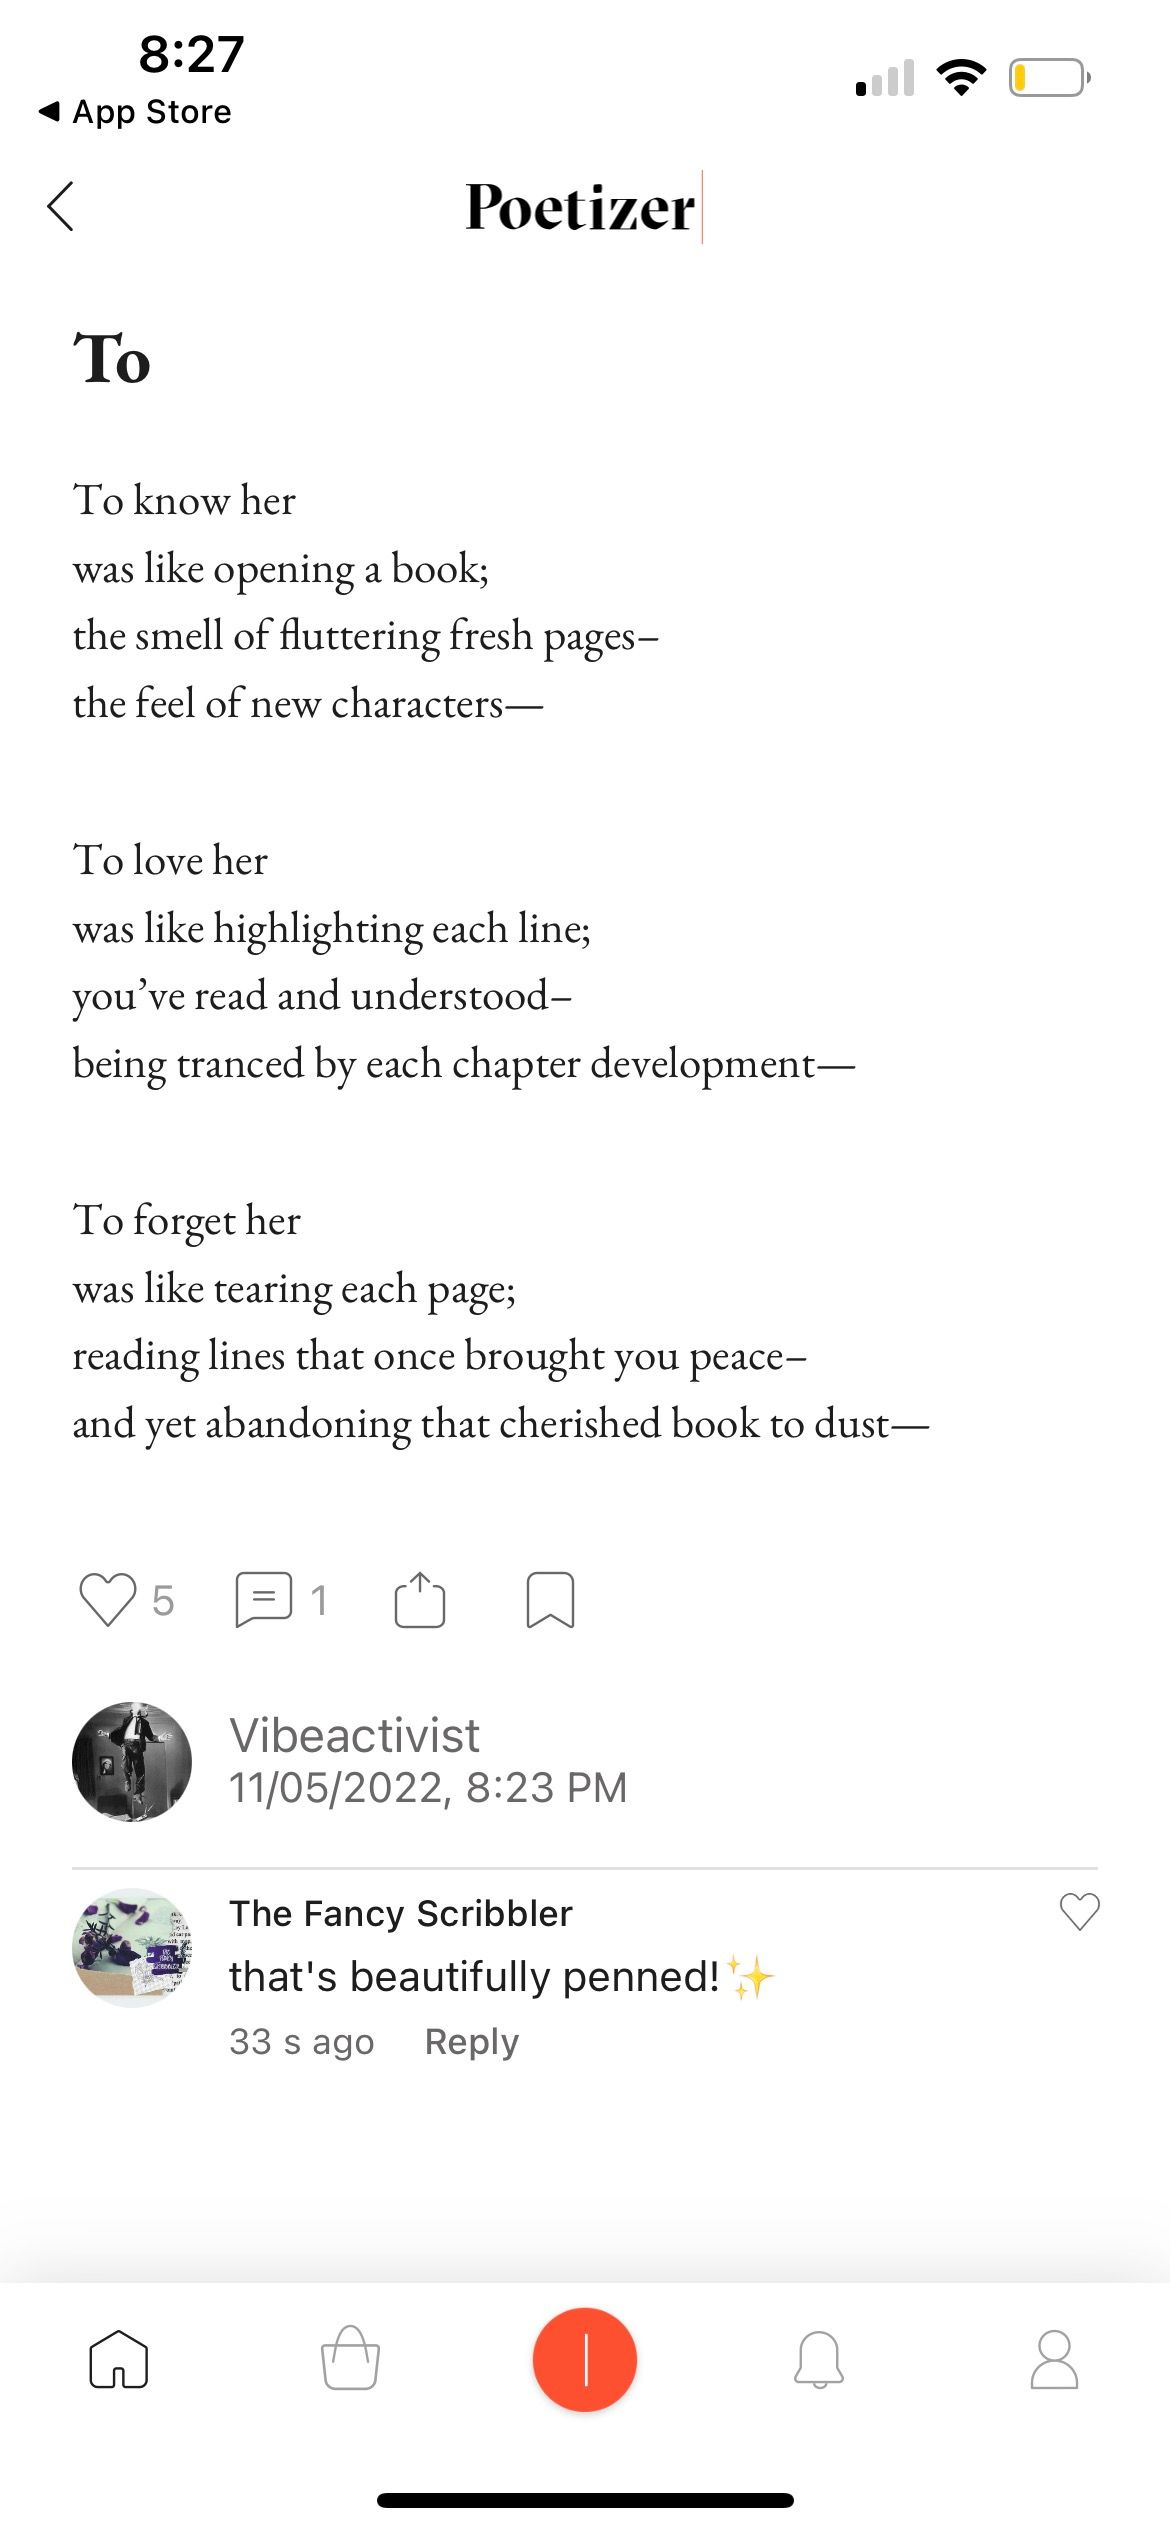 شعر منتشر شده در اپلیکیشن شاعر